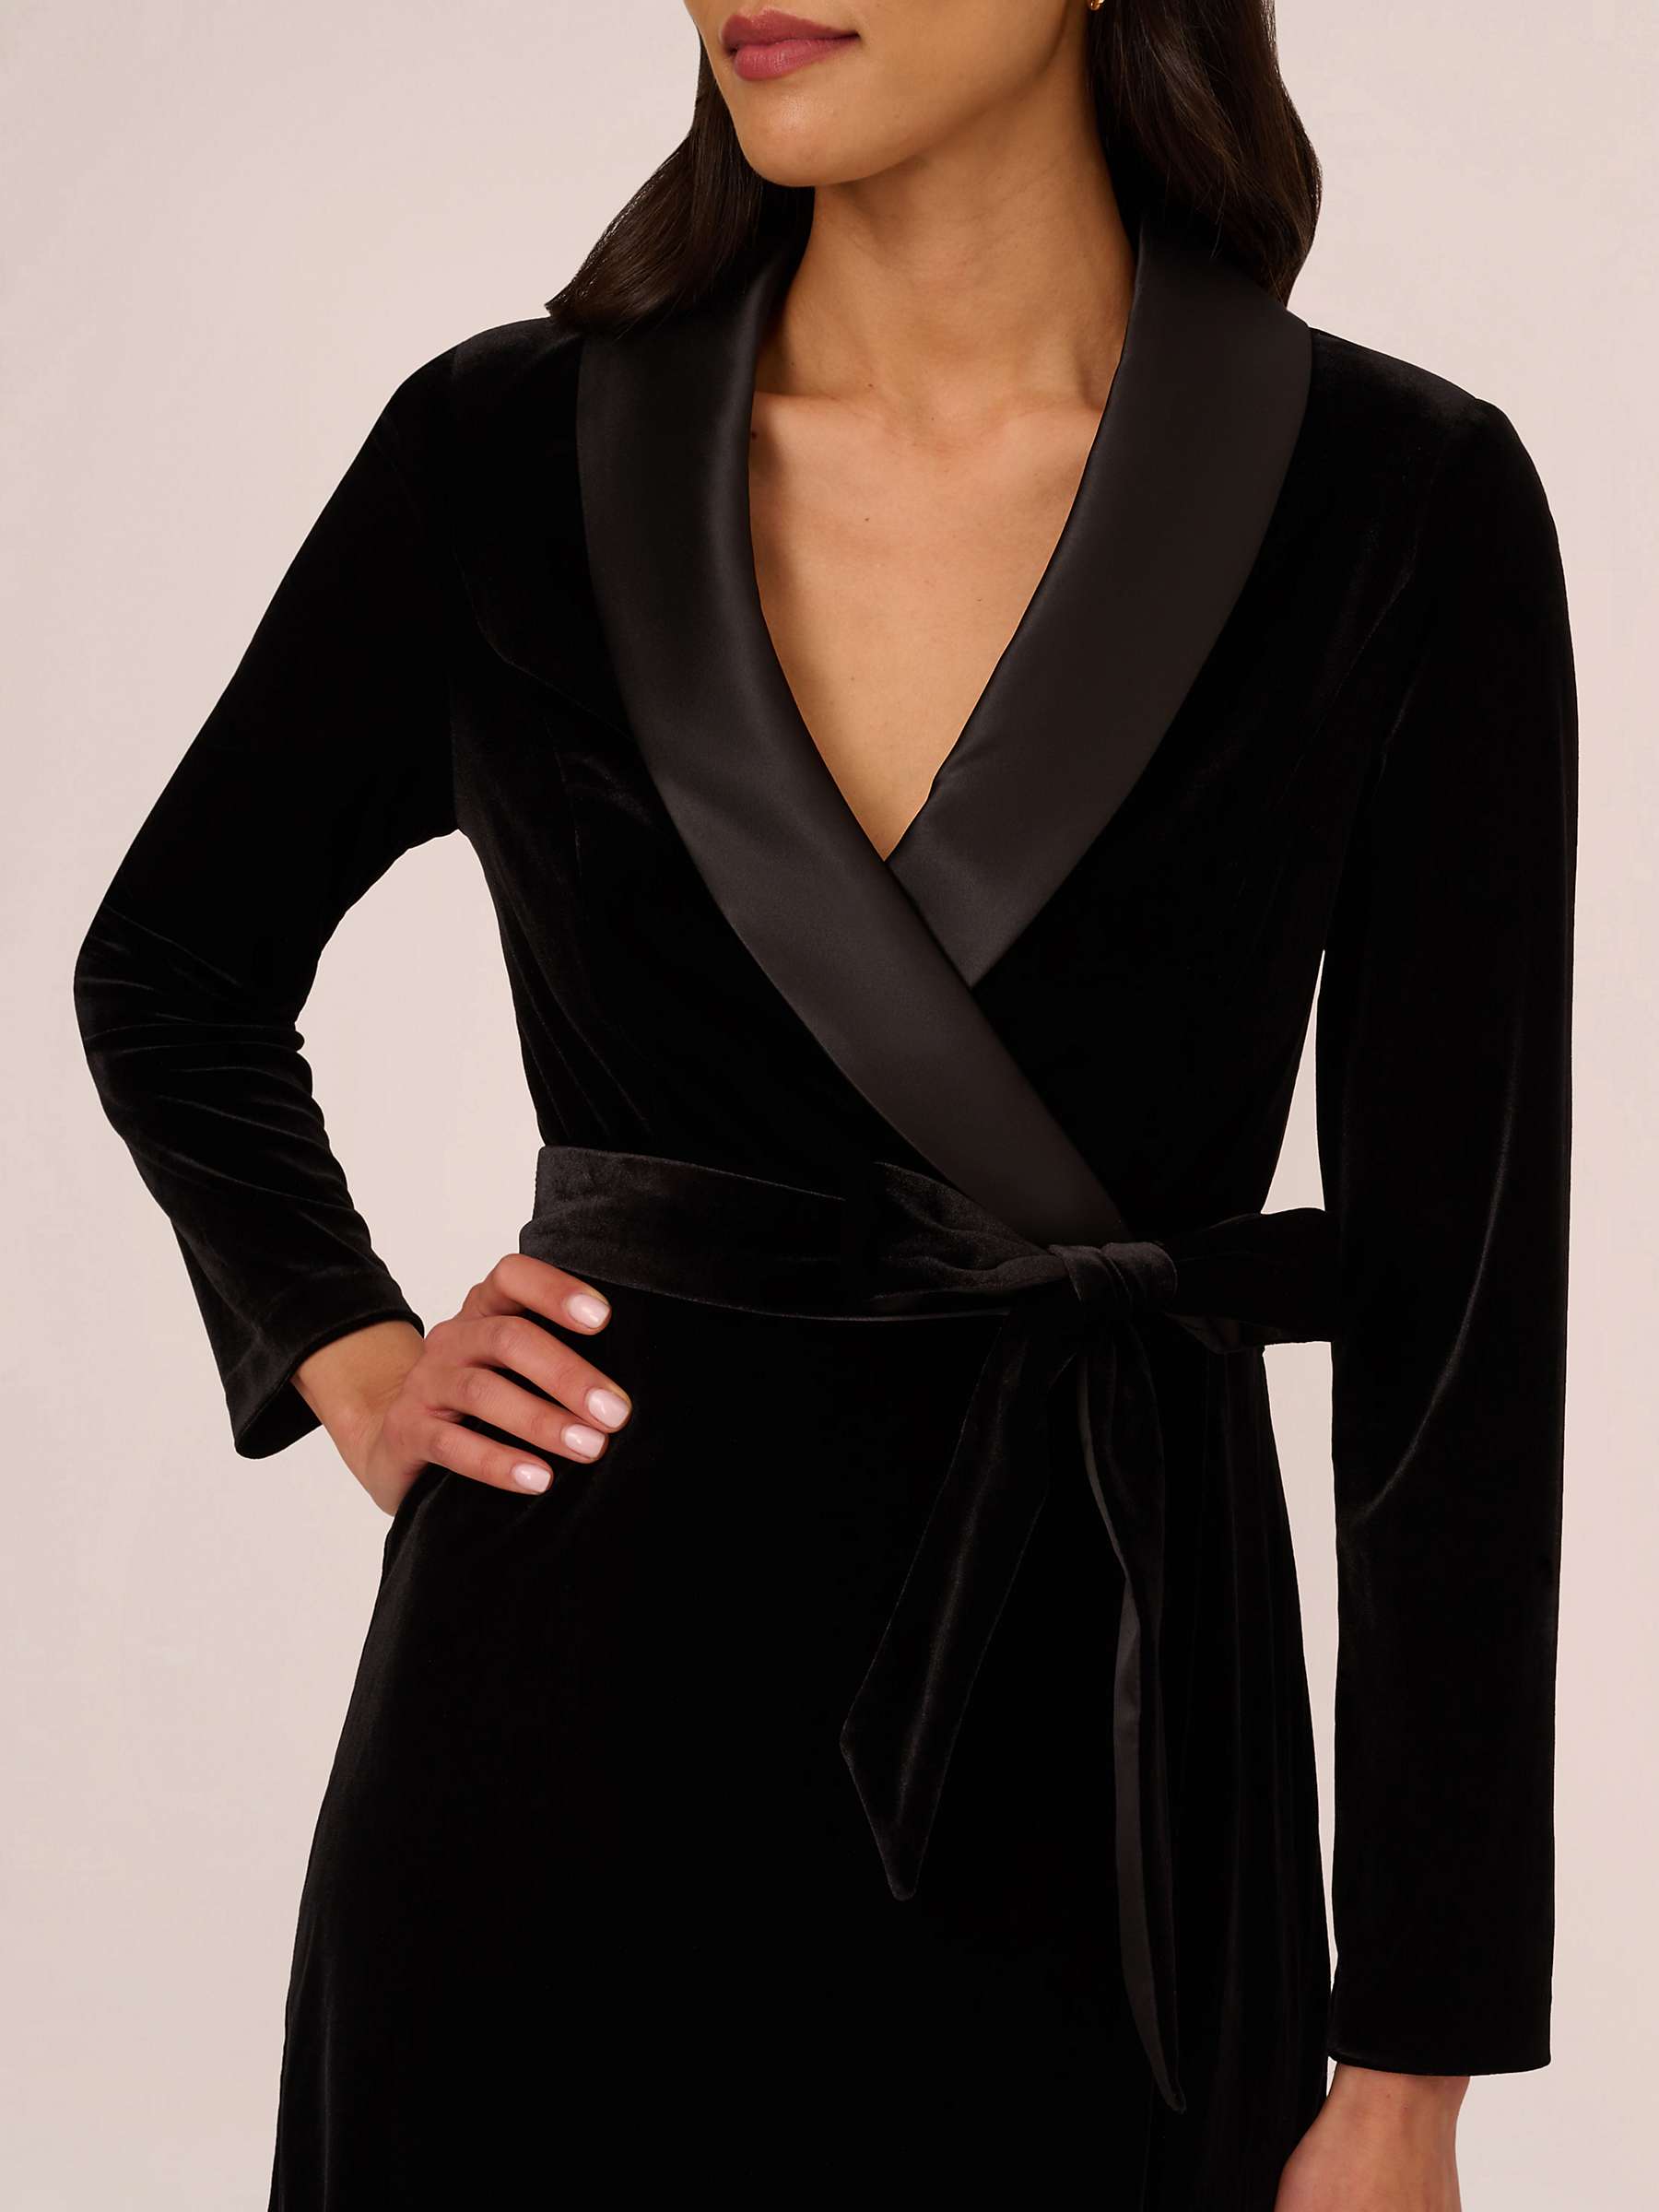 Buy Adrianna Papell Velvet Tuxedo Dress Online at johnlewis.com